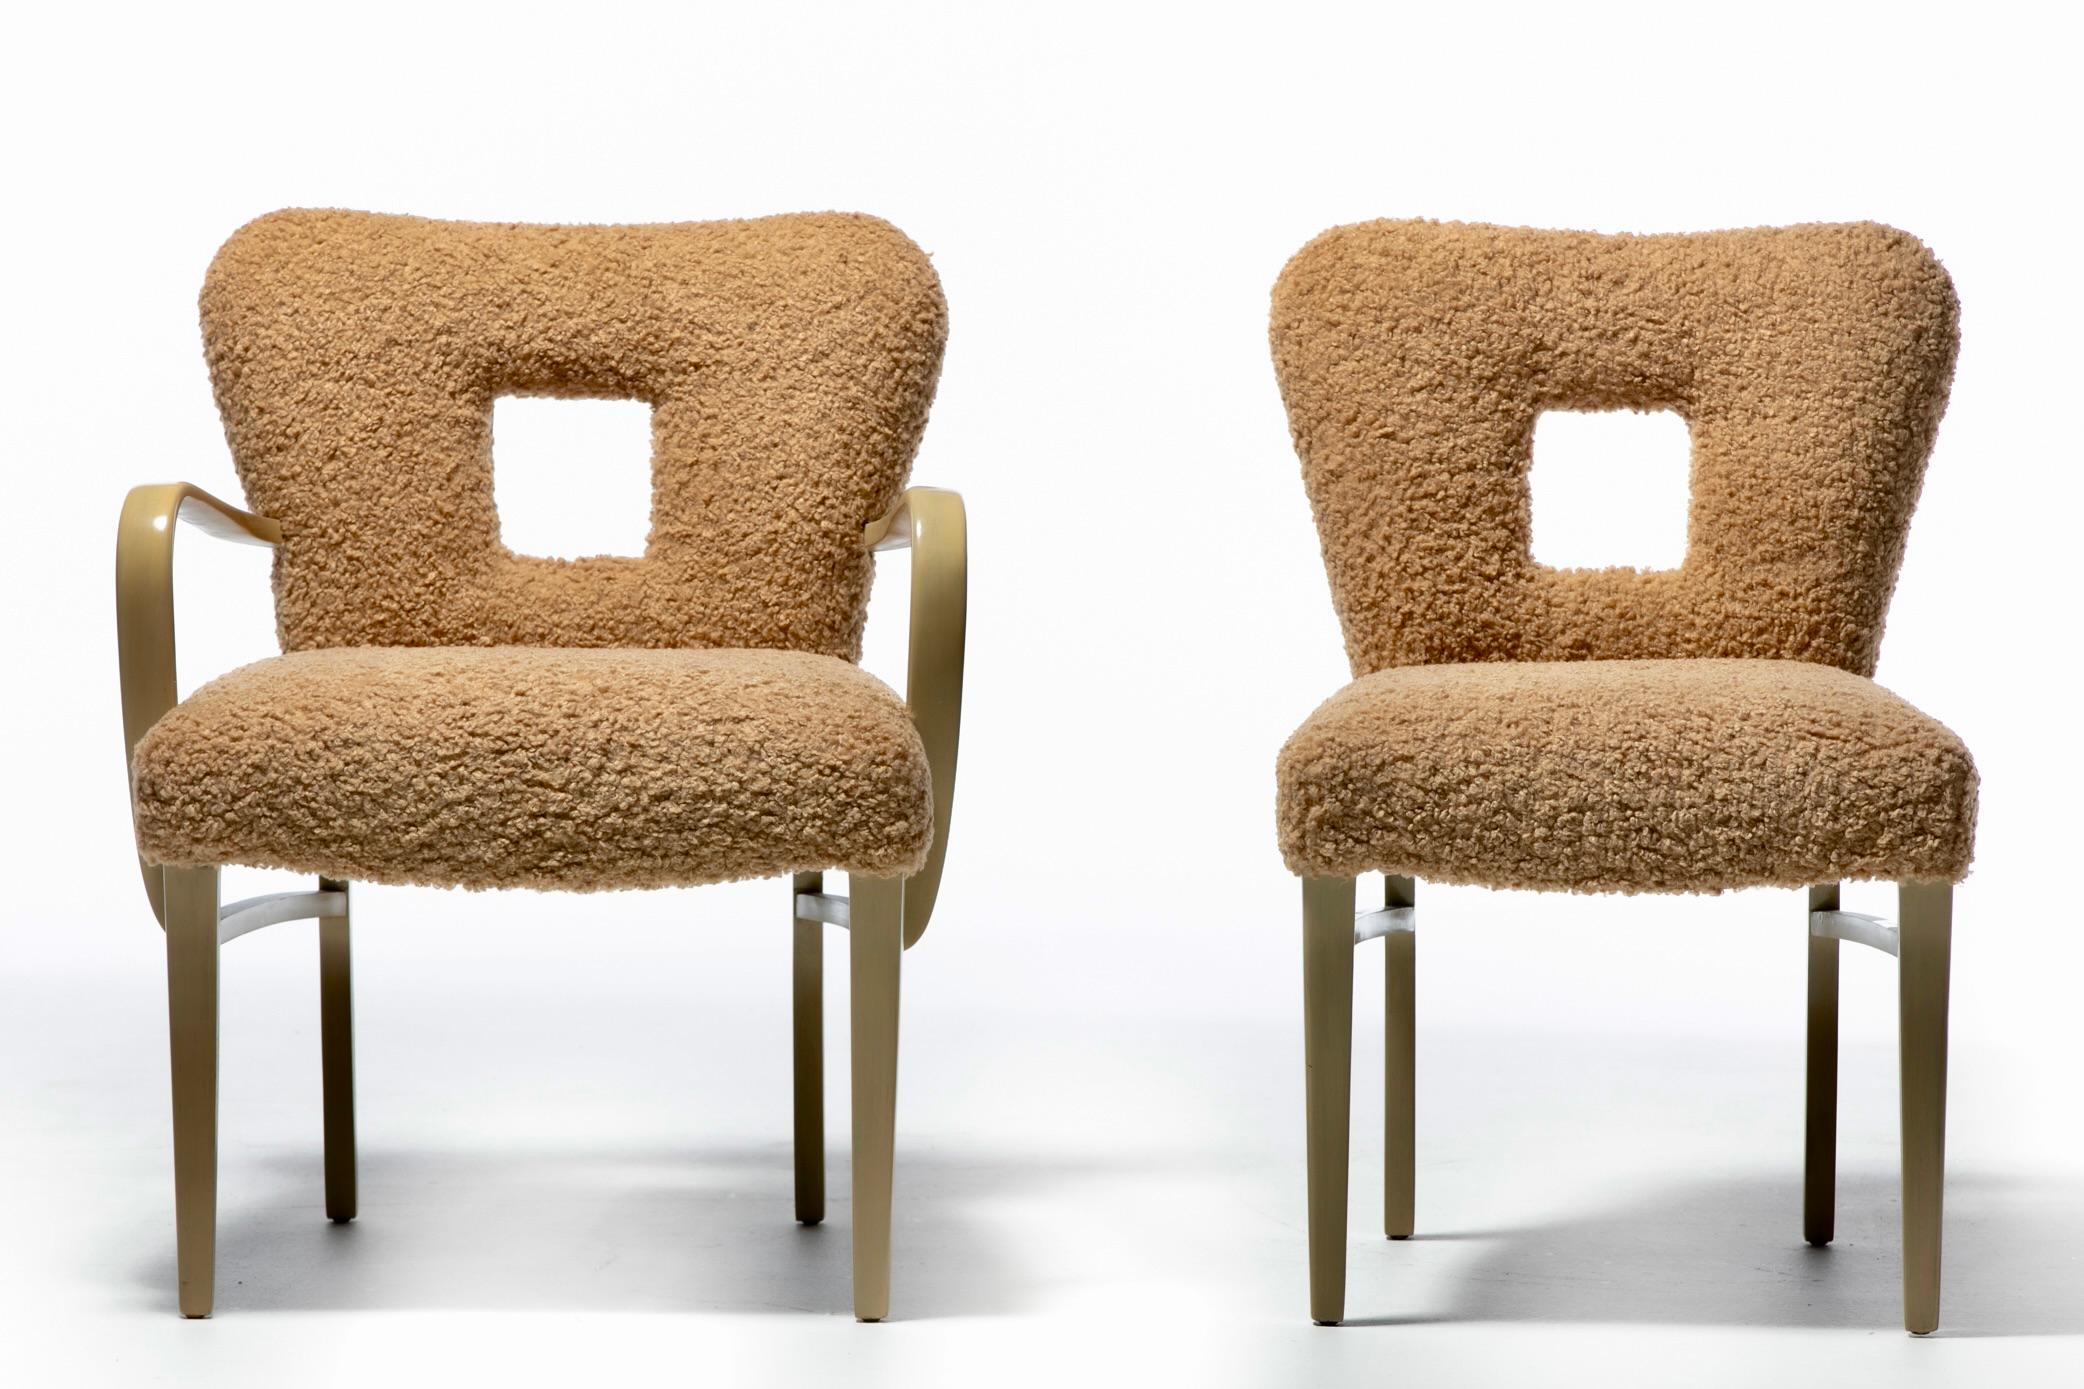 Eine ganz besondere und große ikonische Reihe von Mid Century Modern Dining Chairs, entworfen von einem der beliebtesten aller Paul Frankl vollständig restauriert von oben nach unten mit neu aufgearbeitet gebleichtem Mahagoni Rahmen und neue Kissen